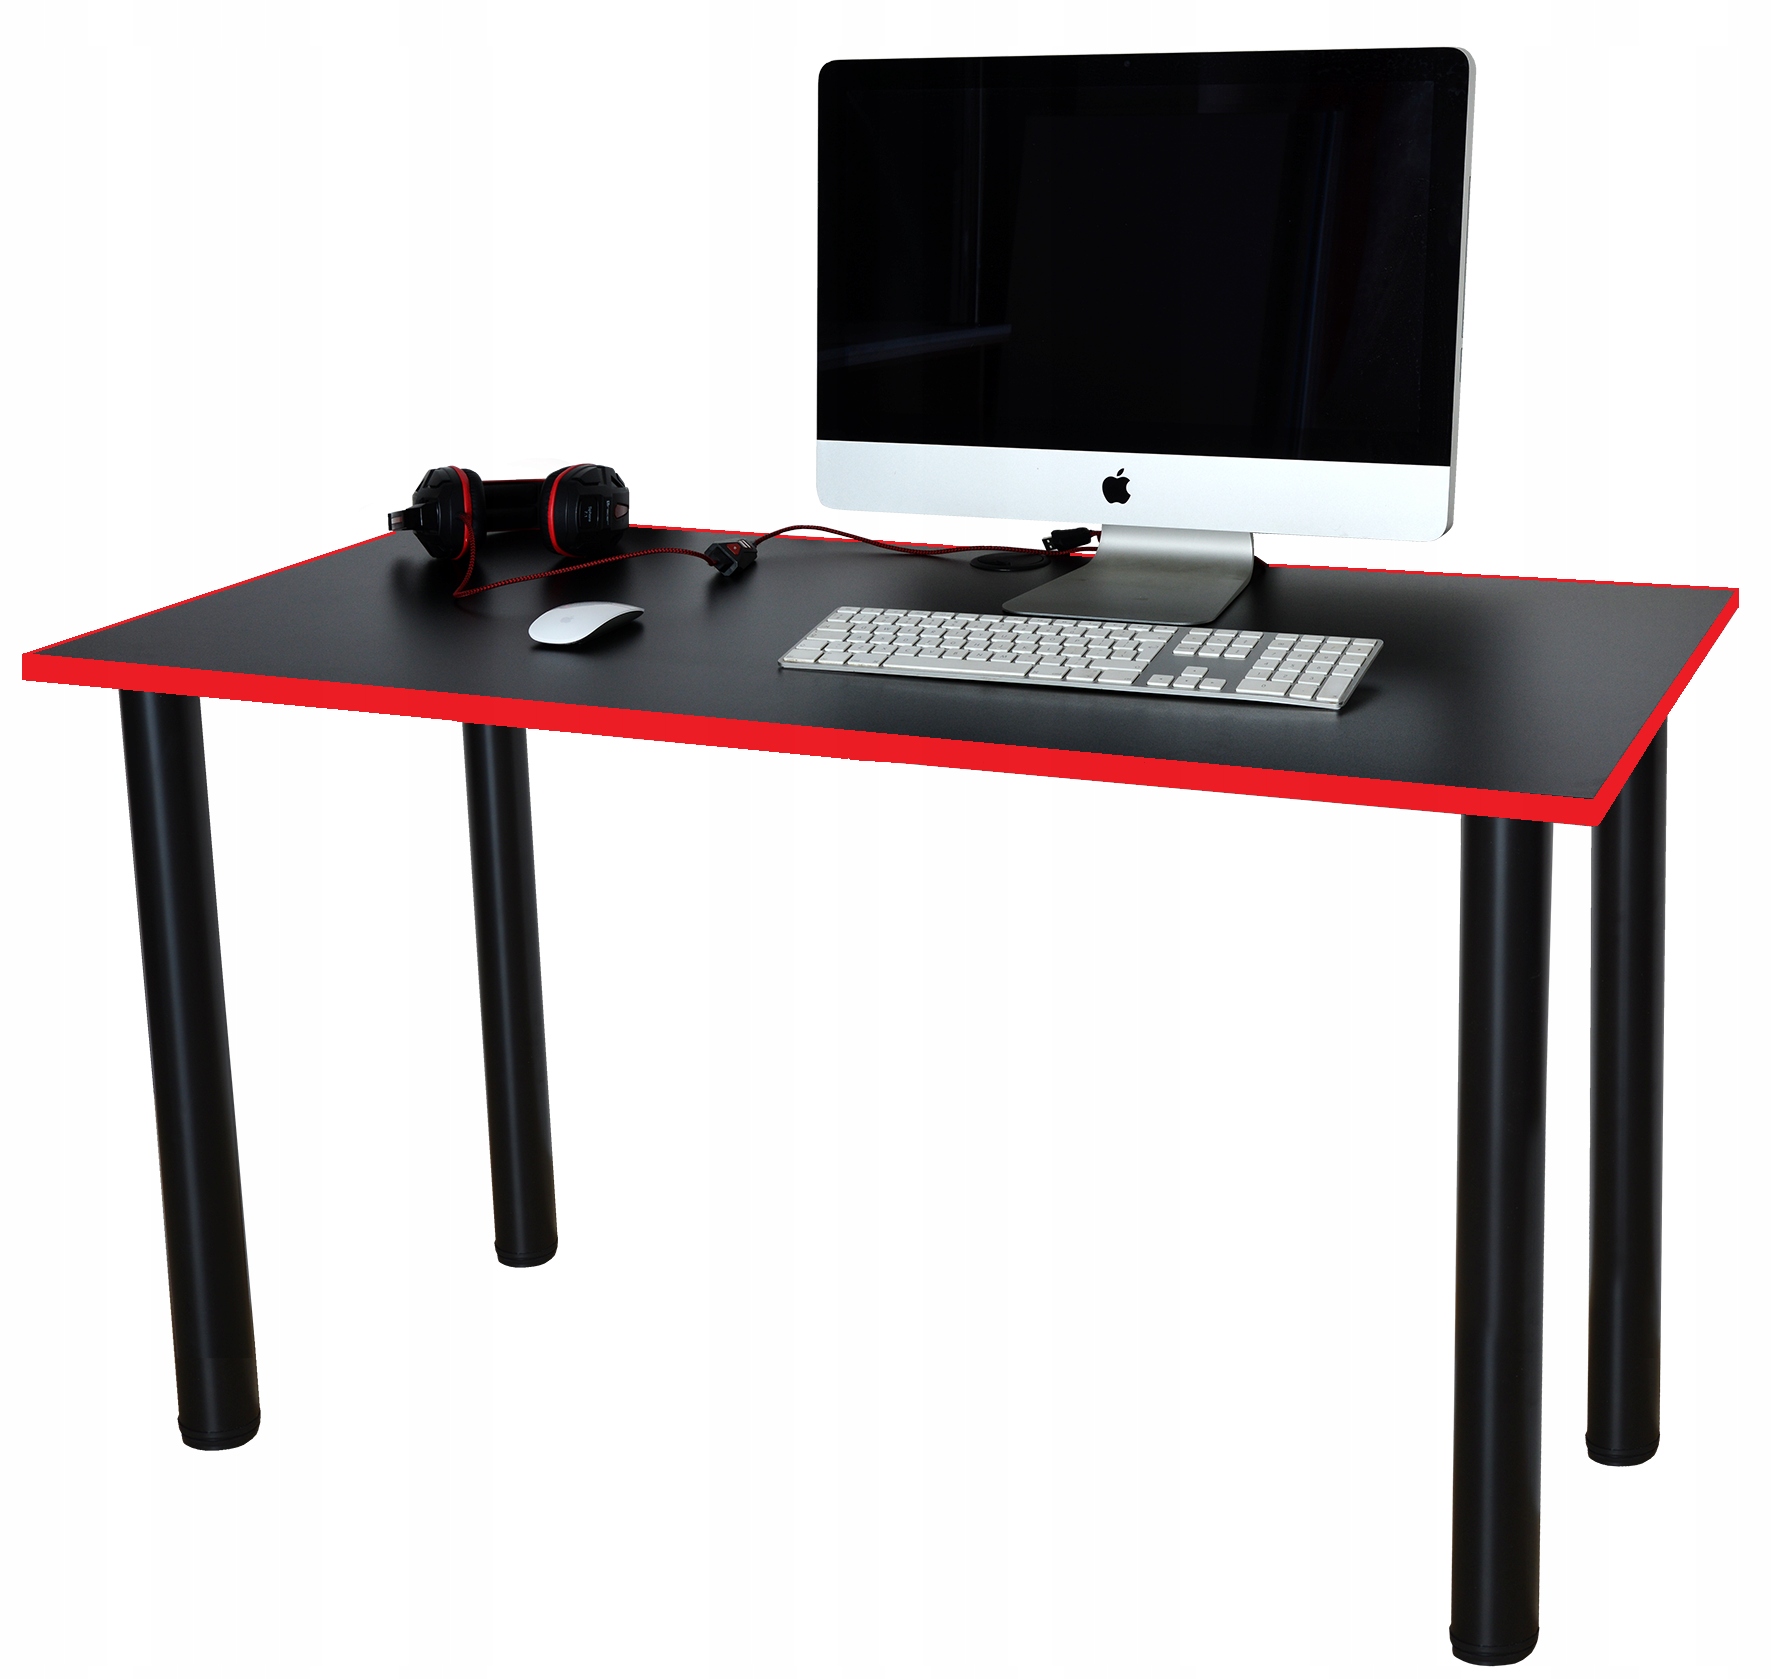 Pagrindinis žaidimų stalas, juodas raudonas kraštas